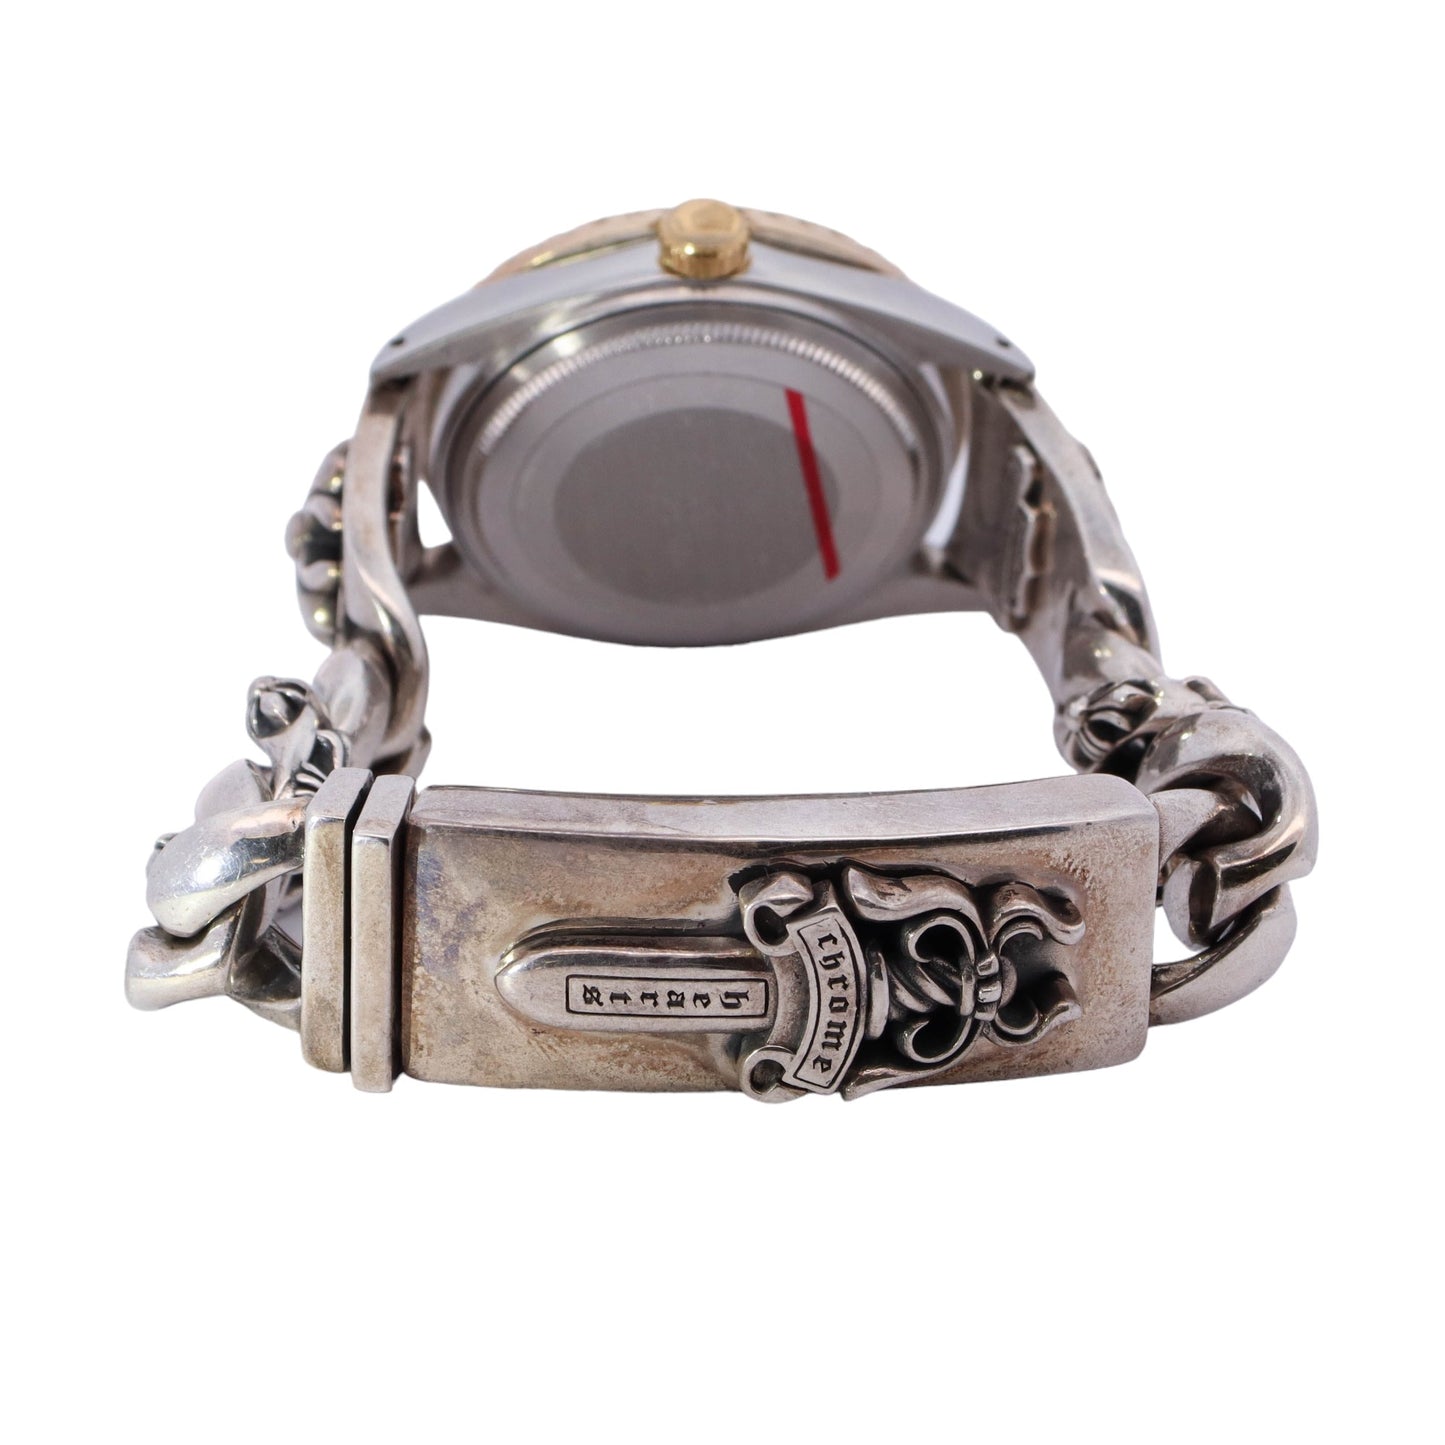 Rolex Datejust Stainless Steel 36mm Custom Arabic Diamond Dial Watch Reference# 1601 - Happy Jewelers Fine Jewelry Lifetime Warranty